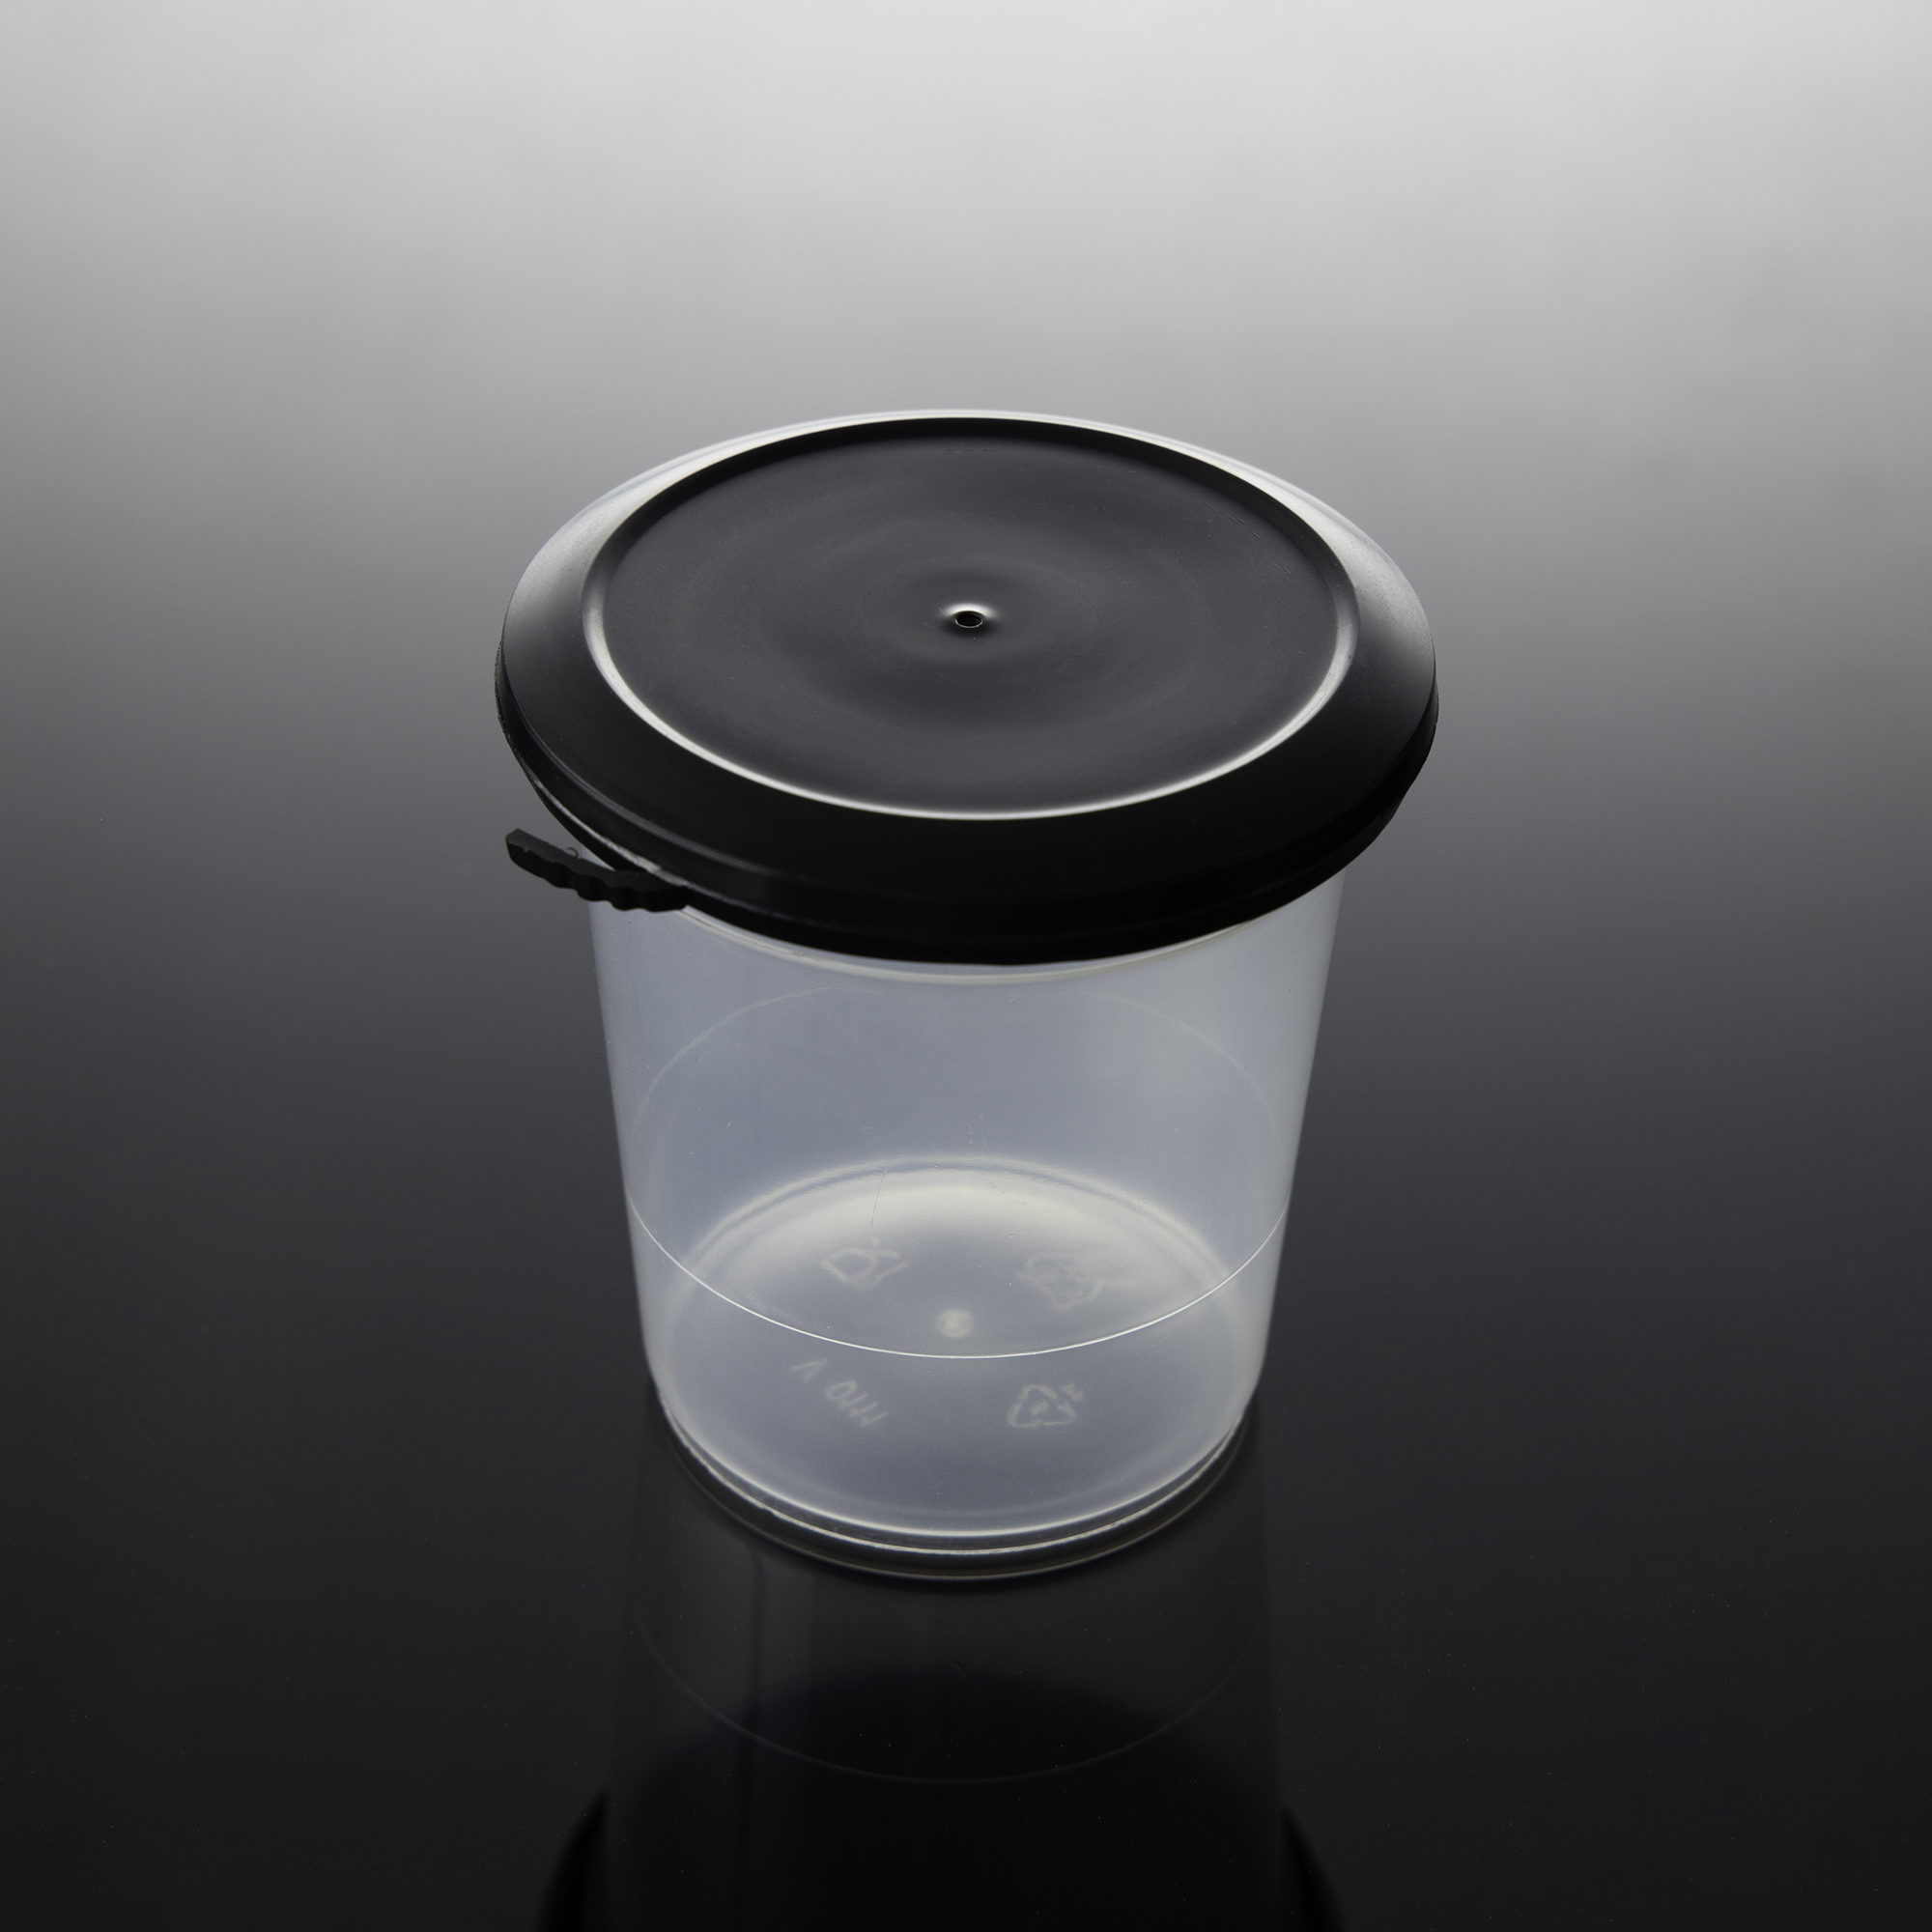 ถ้วยพลาสติก พร้อมฝาสีดำ ขนาด 6 oz. (20ชุด/แพ็ค)